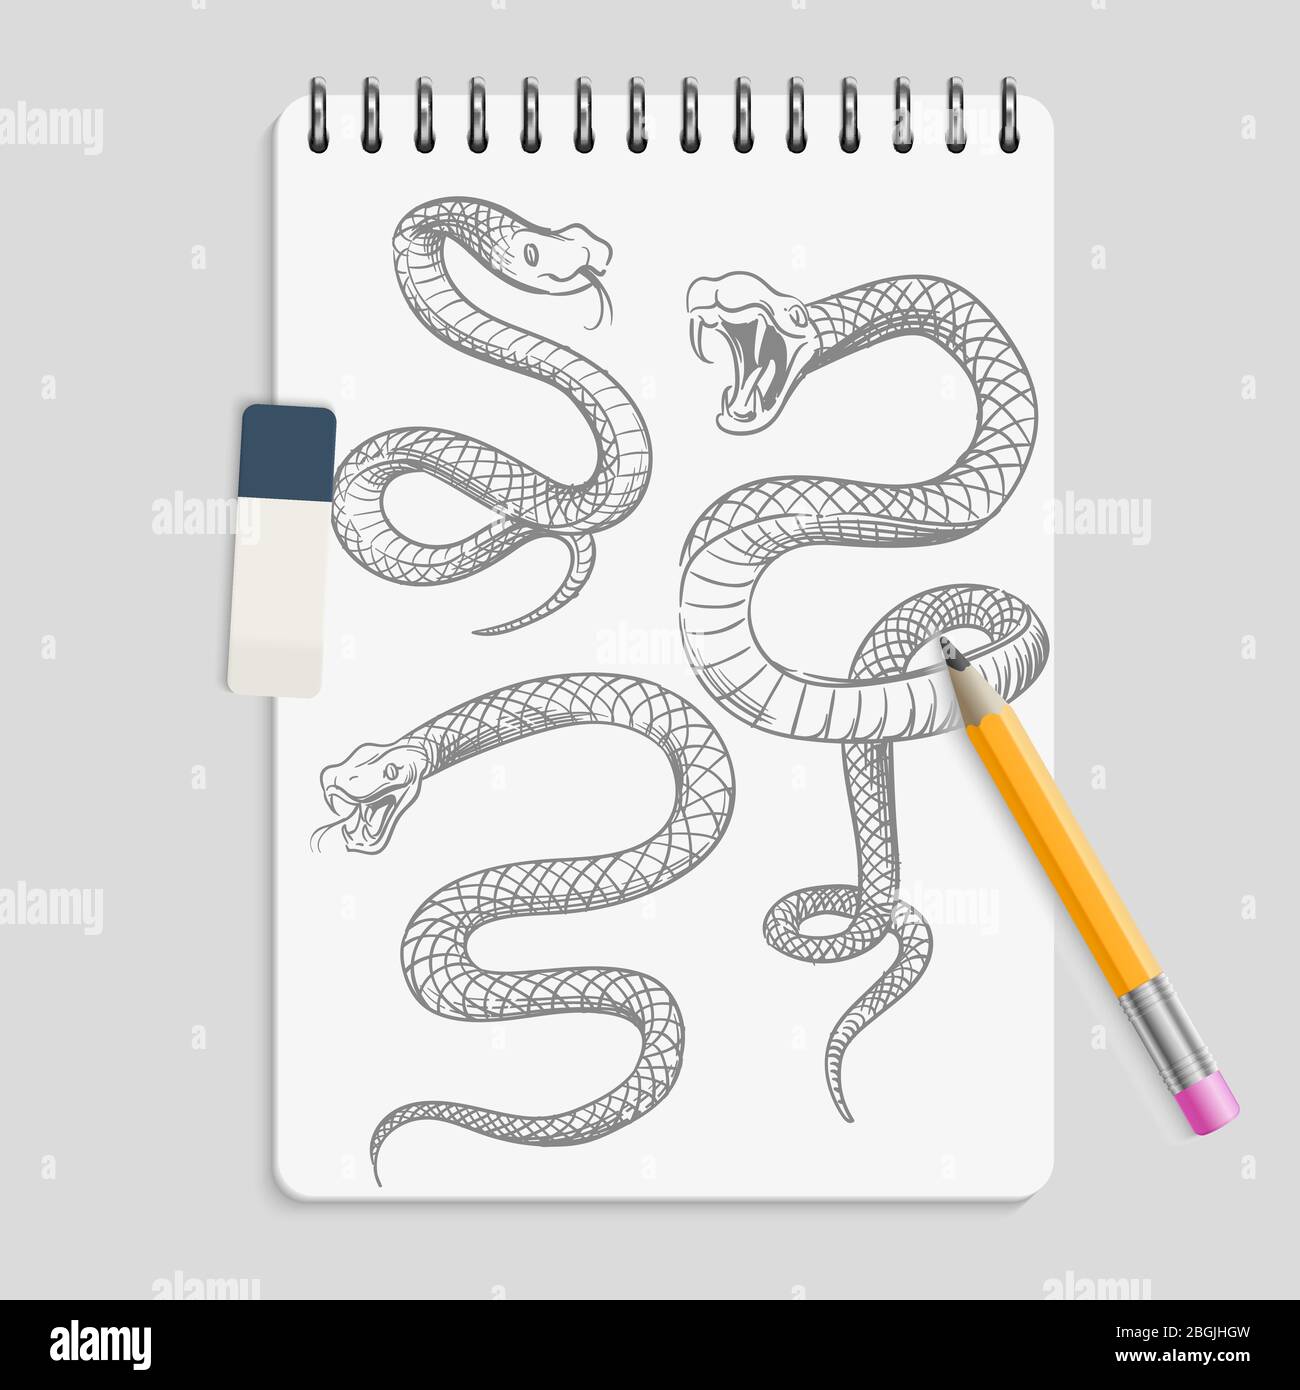 Serpents dessinés à la main sur la page du carnet realizic avec crayon et gomme. Esquisse de tatouage en serpents animaux, vipère de dessin de reptiles, illustration vectorielle Illustration de Vecteur